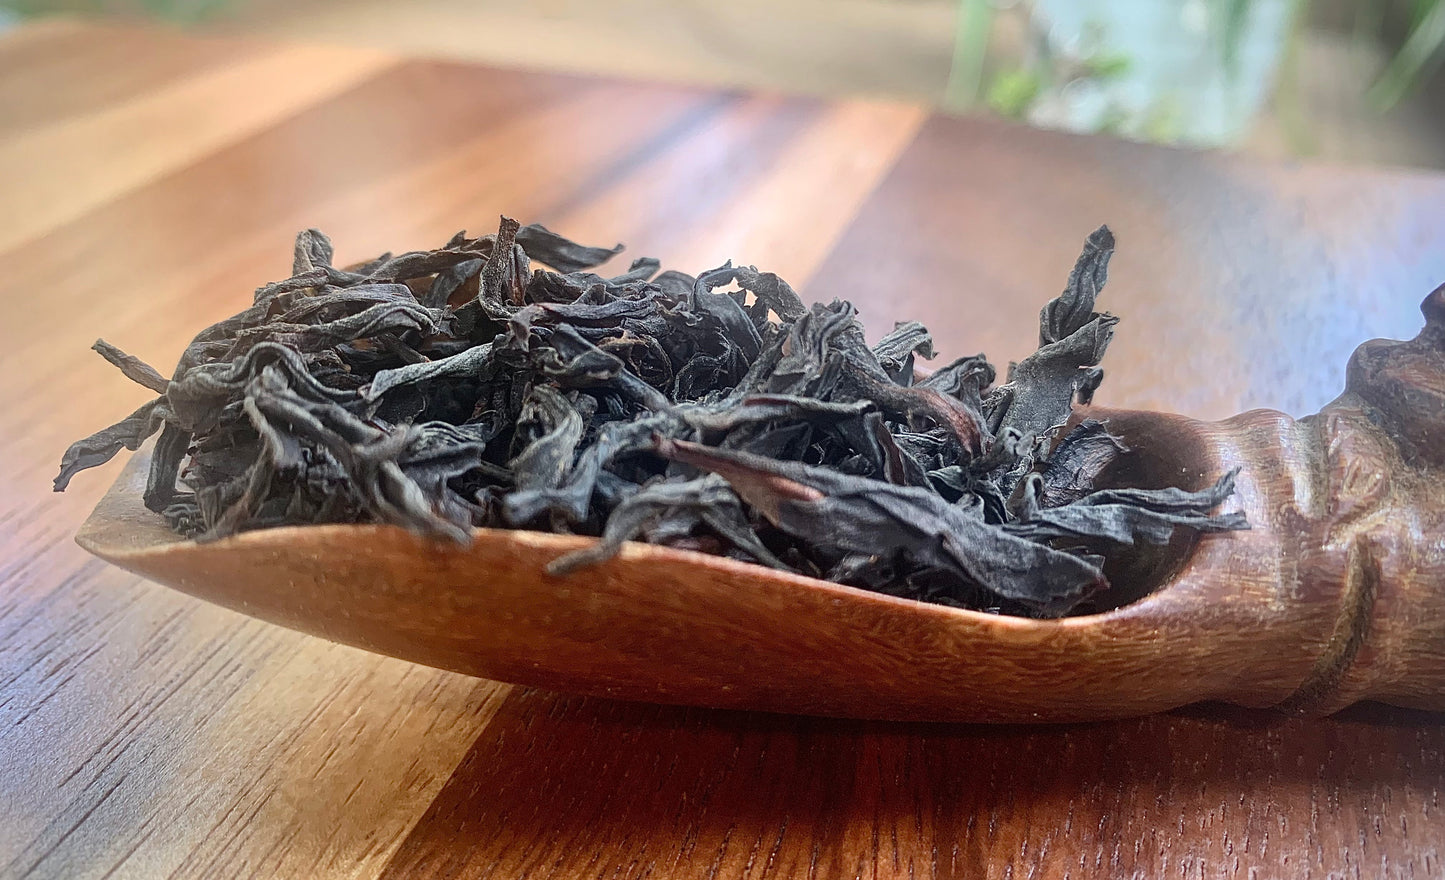 Lapsang Souchong Premium (Floral) Black Tea